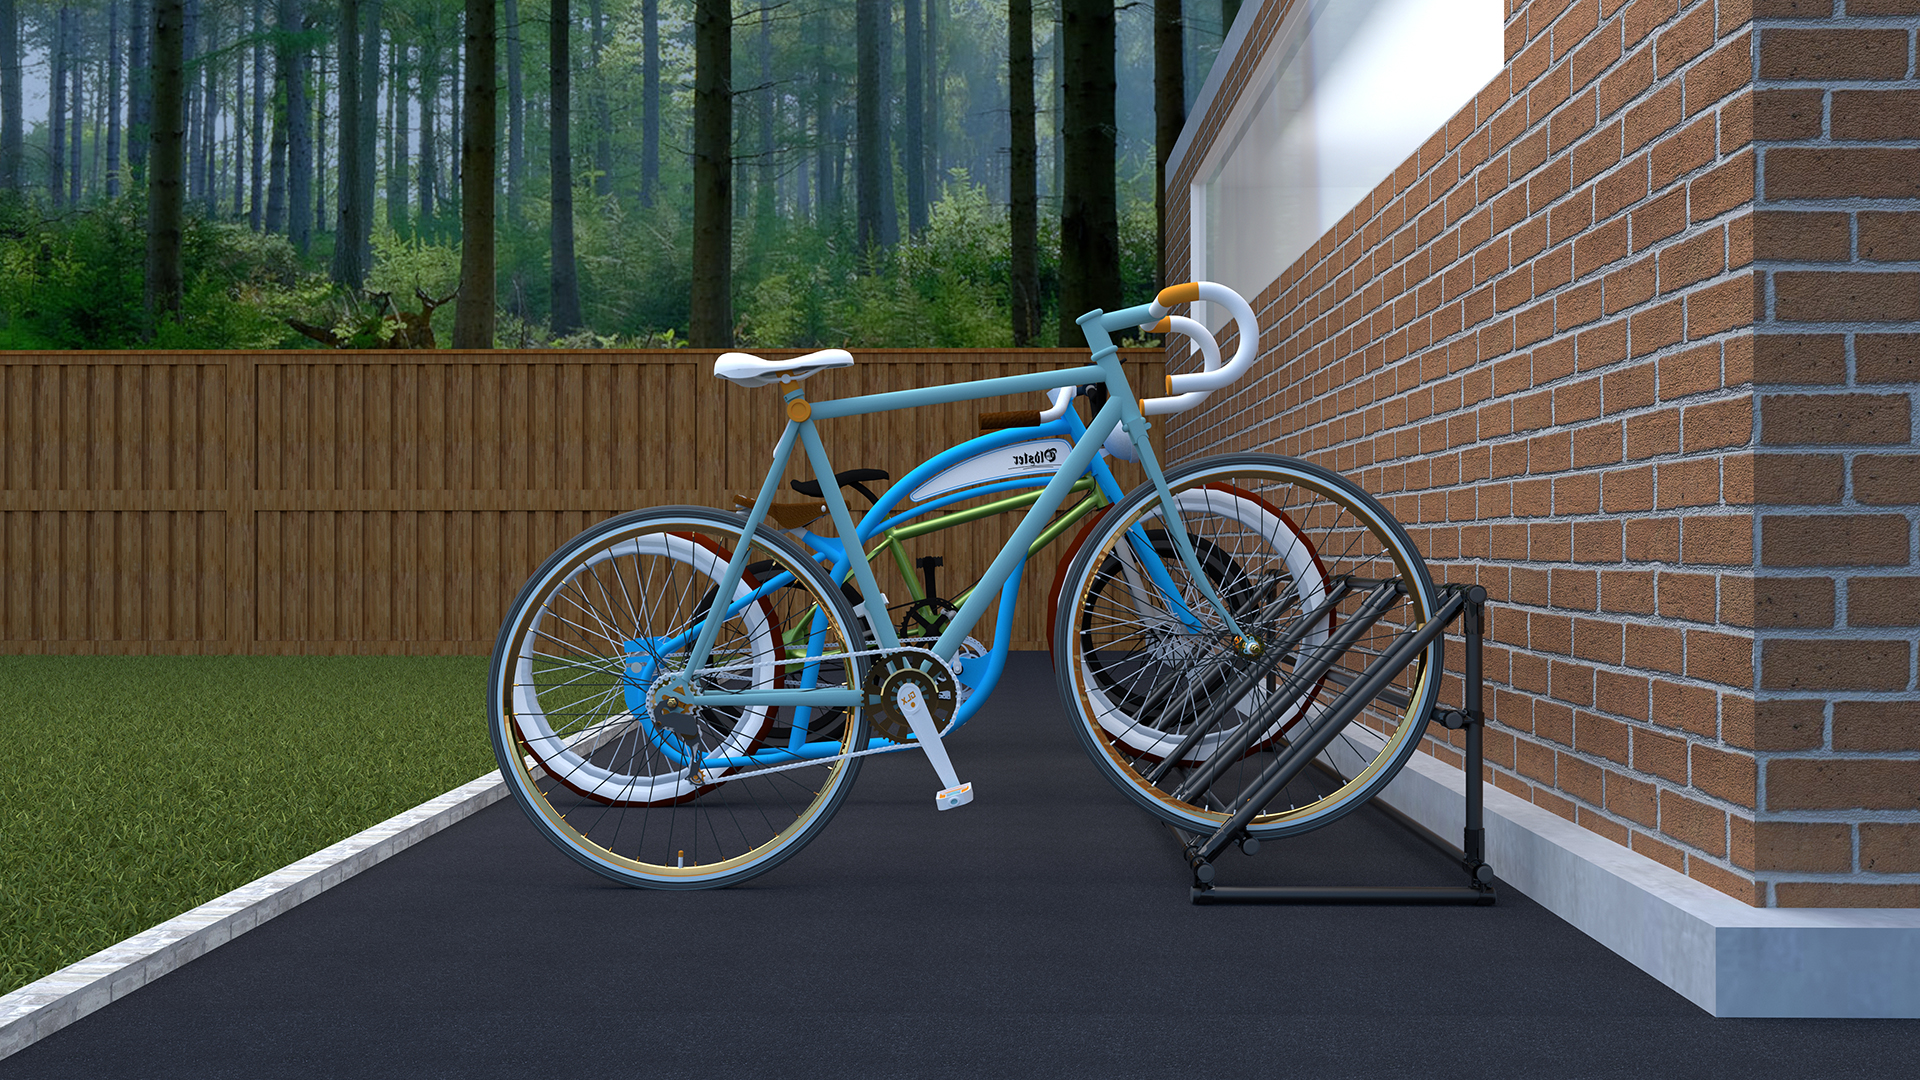 diy garage storage for bikes